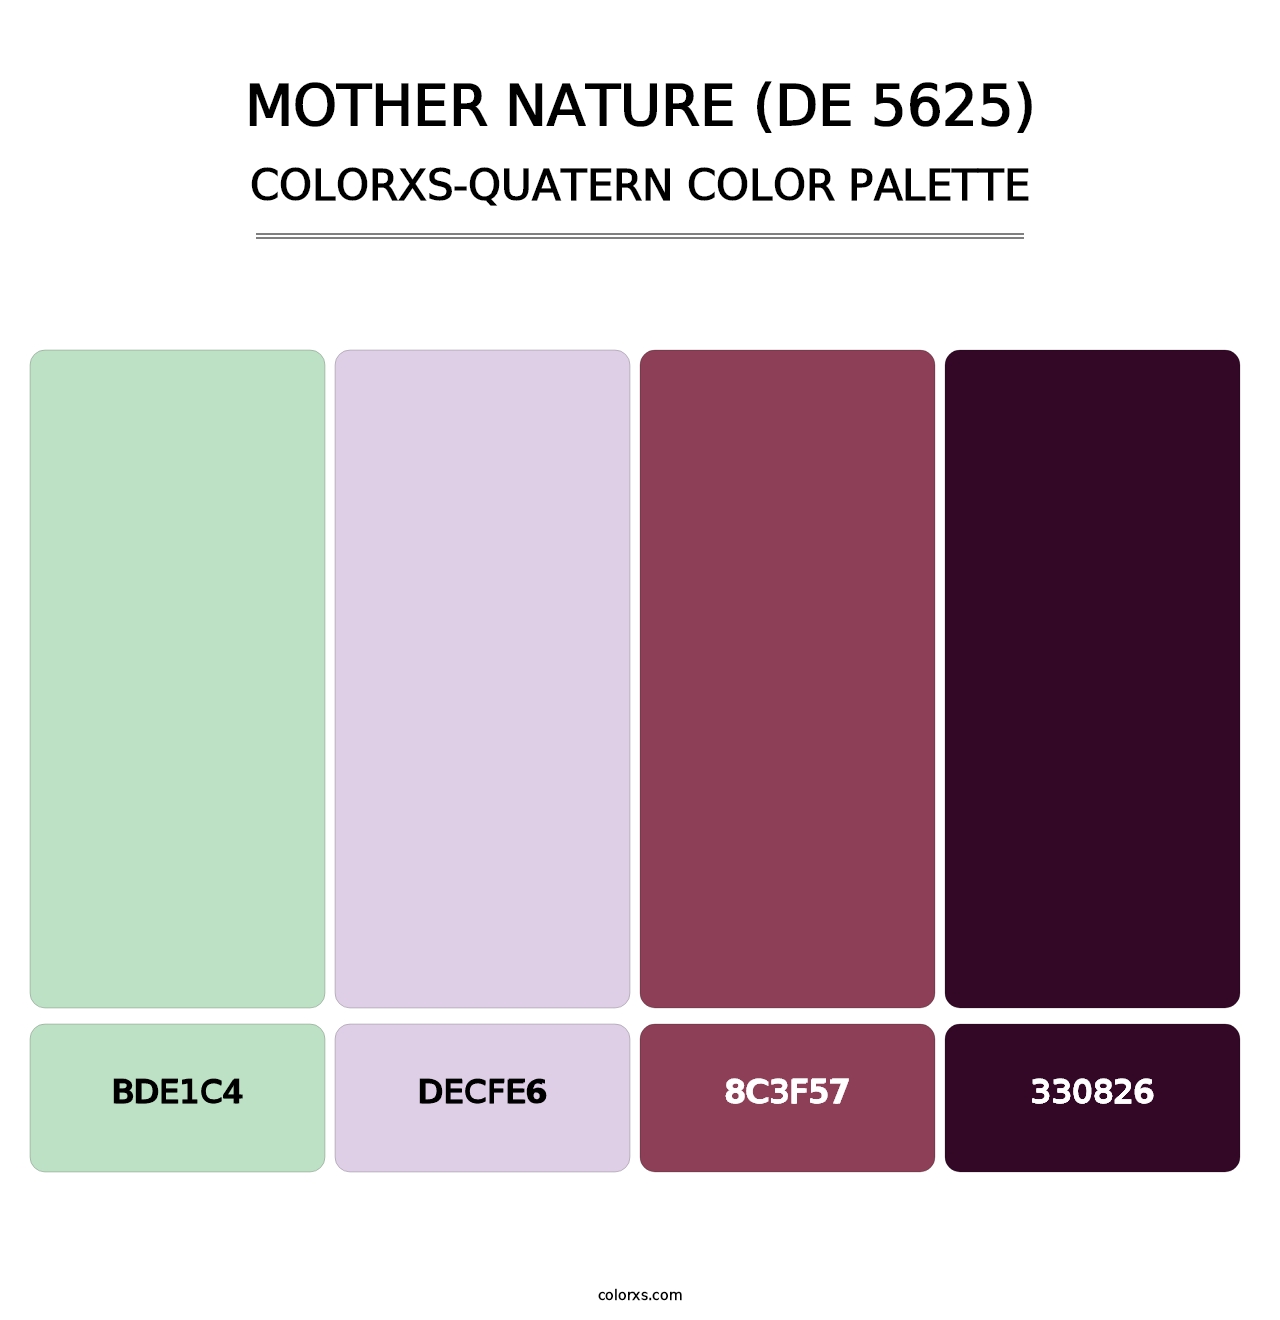 Mother Nature (DE 5625) - Colorxs Quatern Palette